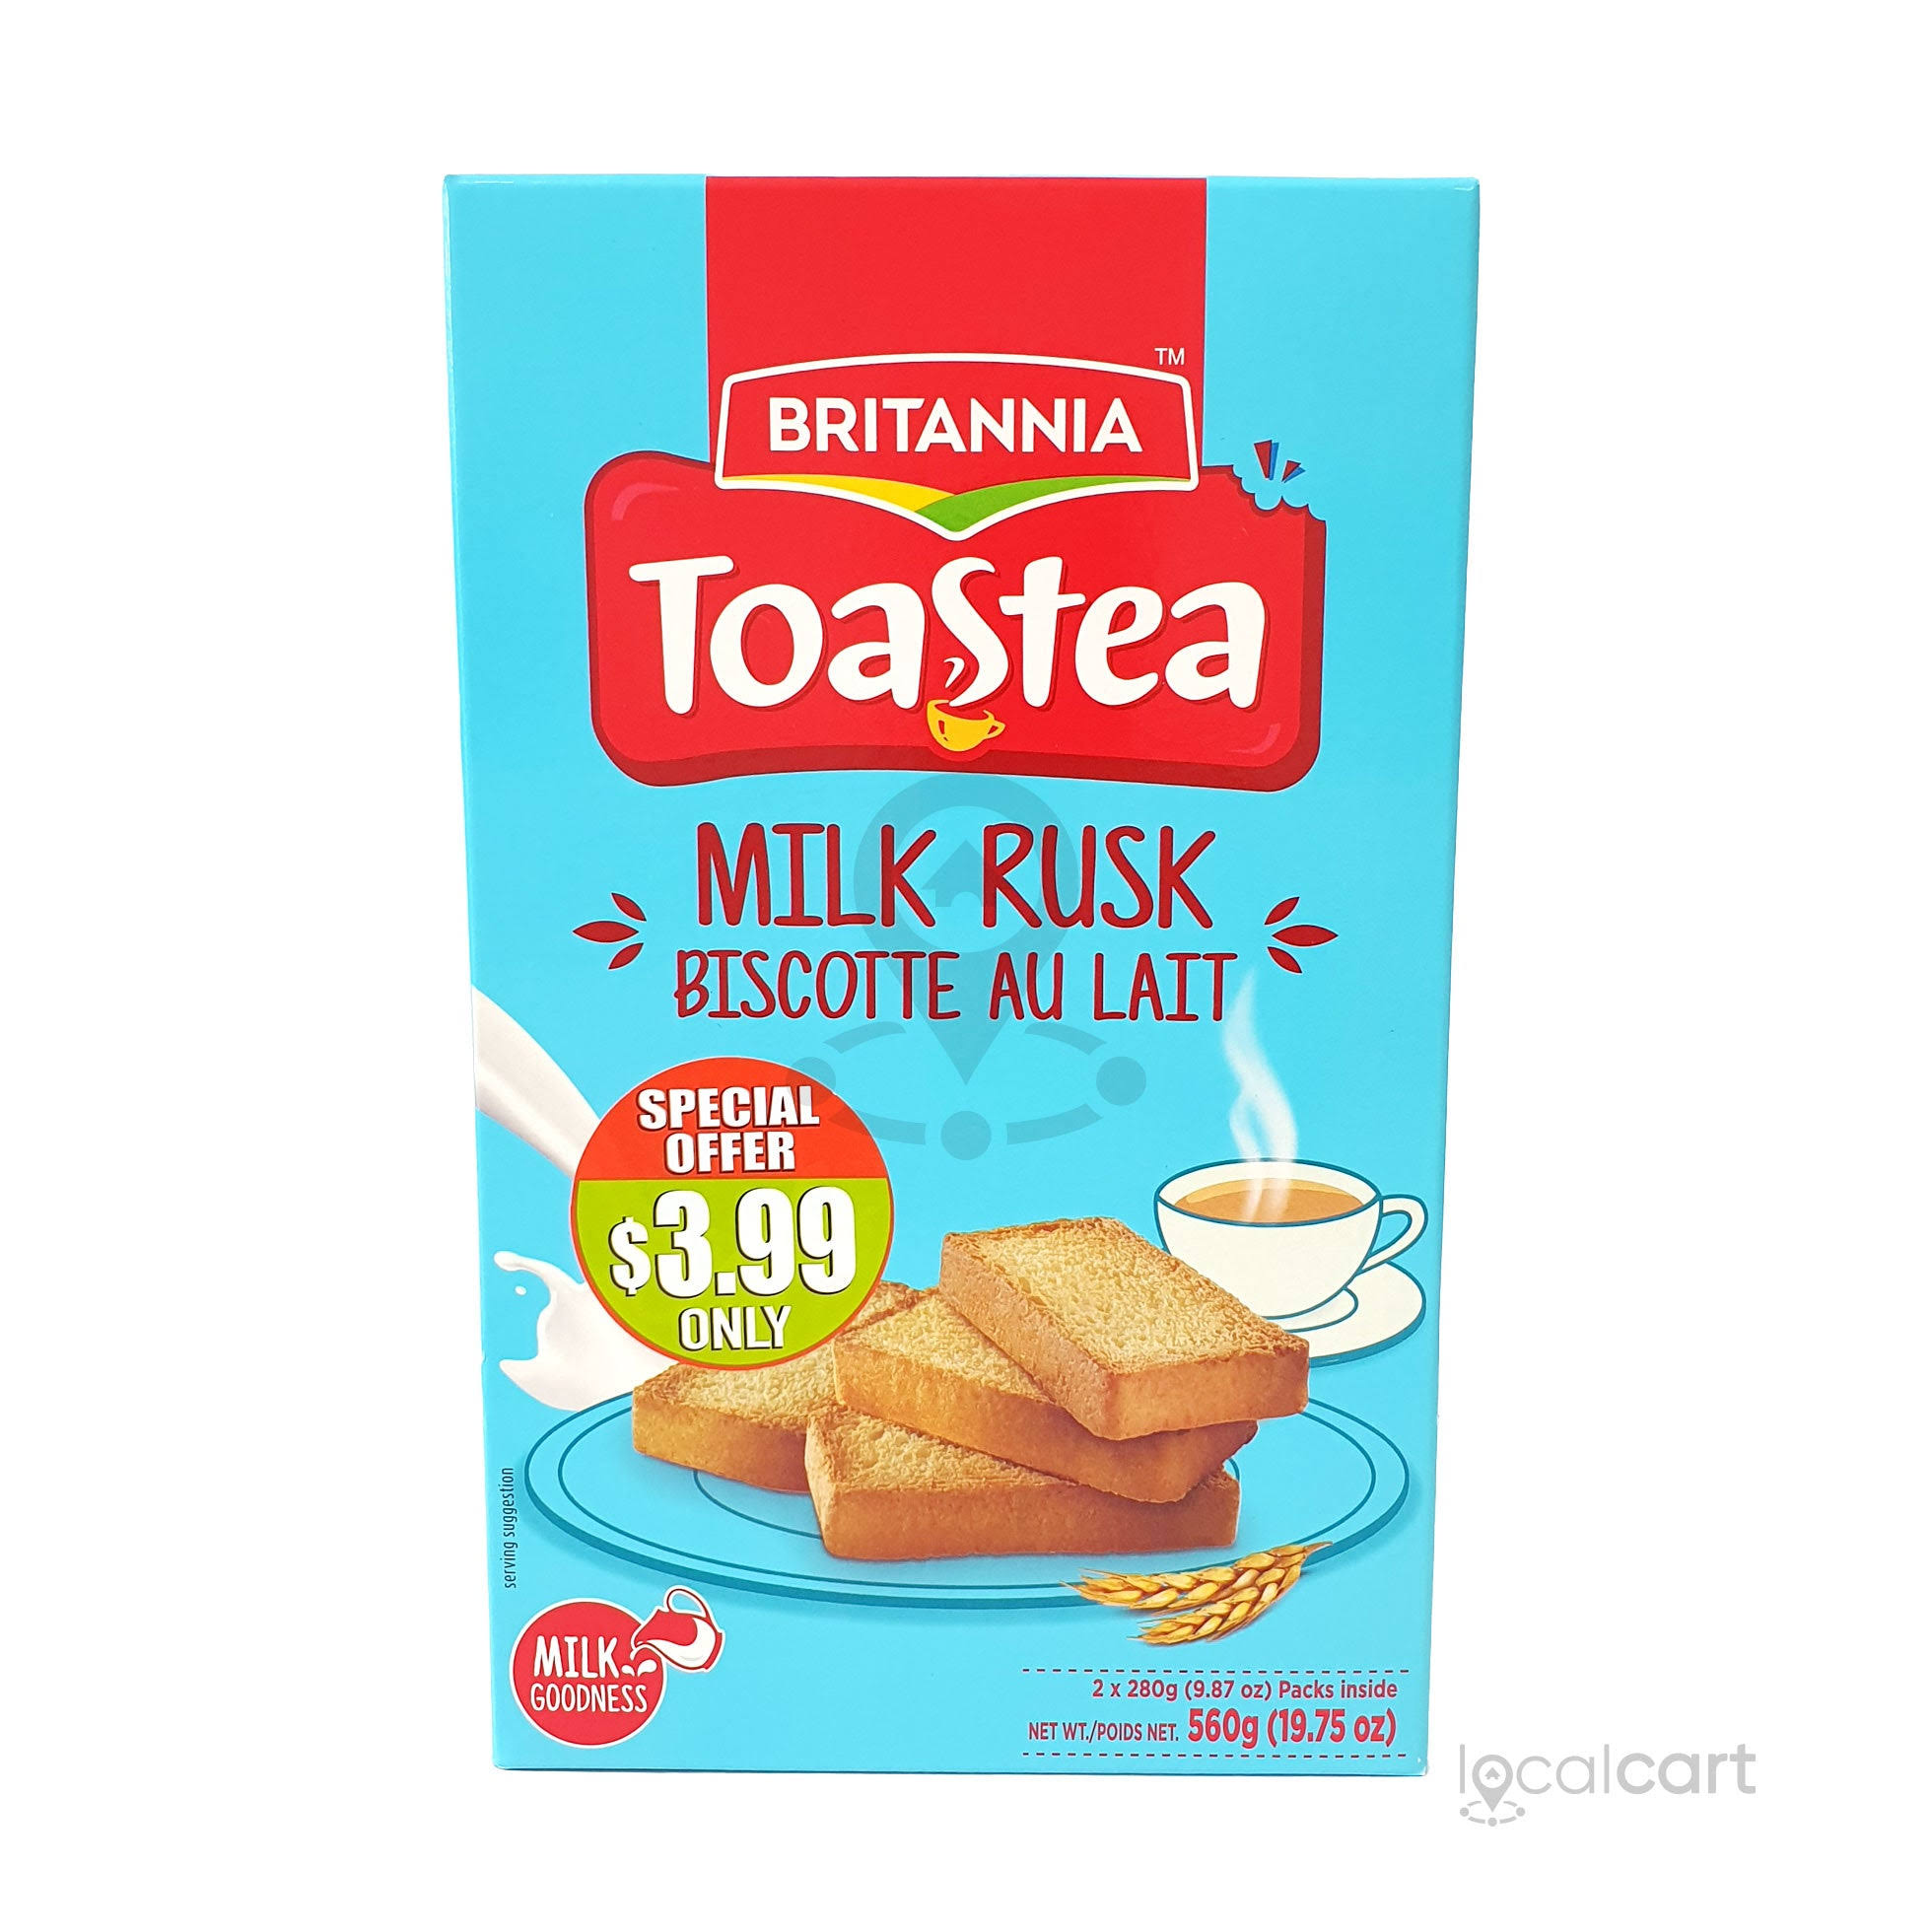 Britannia Milk Rusks 620g